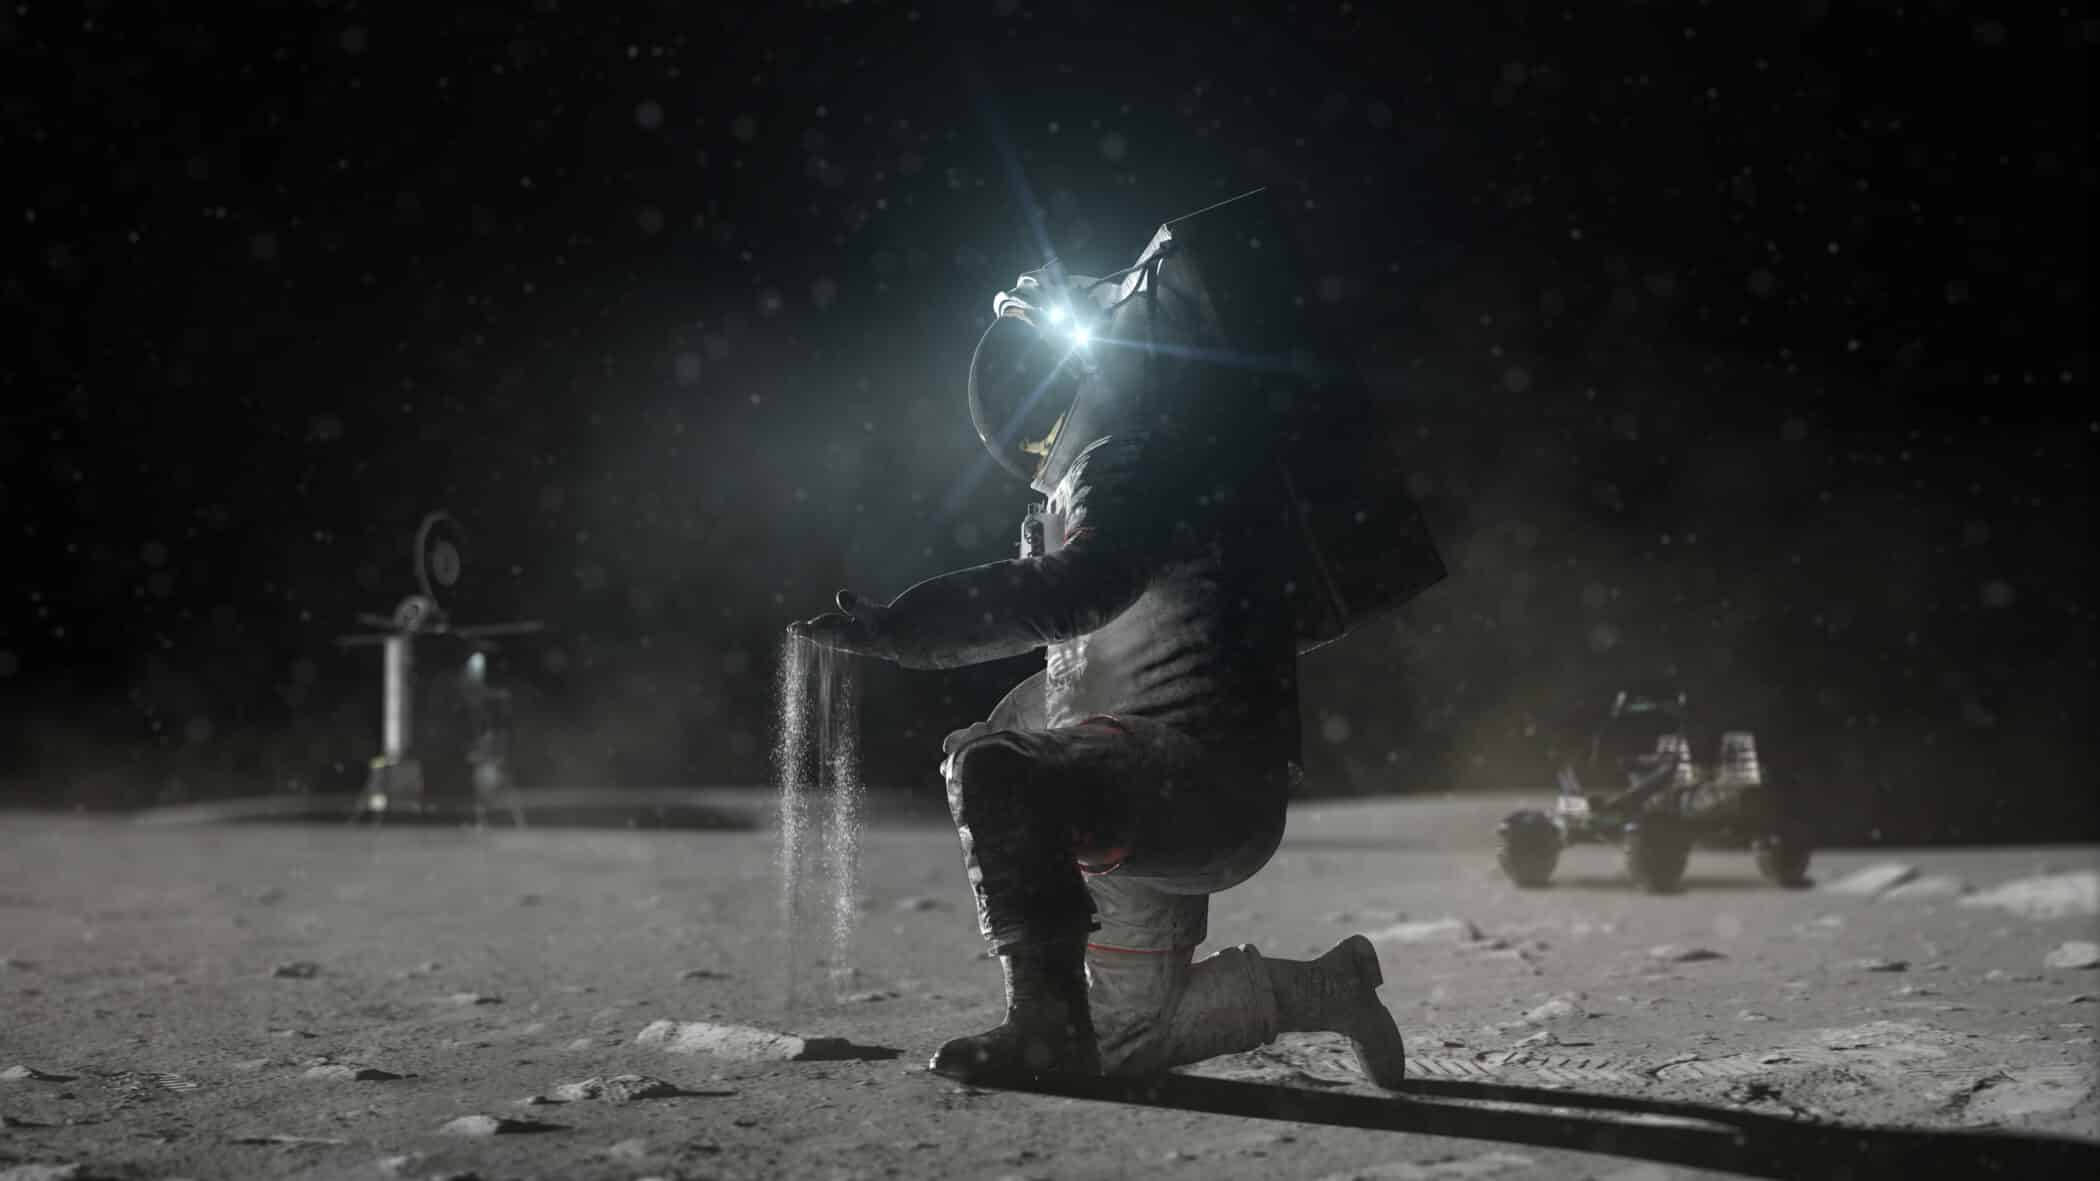 宇宙飛行士の下着を清潔に保つ事が月面探査の鍵を握る